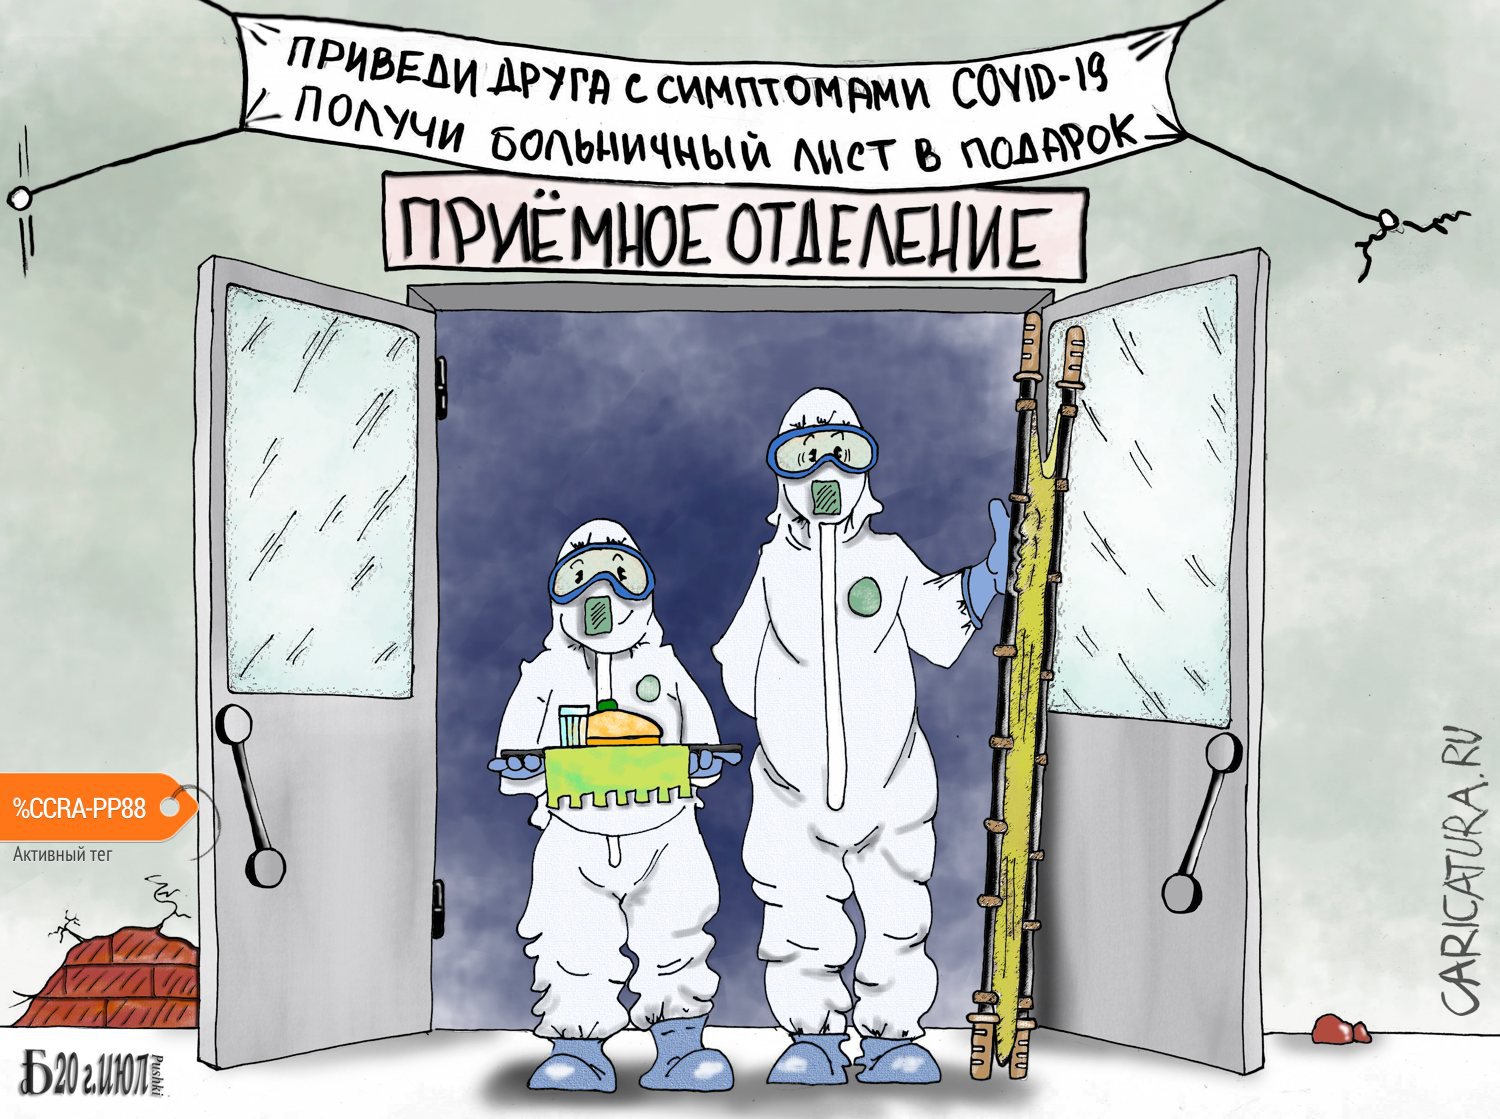 Карикатура "Про Приёмное отделение при определённых условиях", Борис Демин